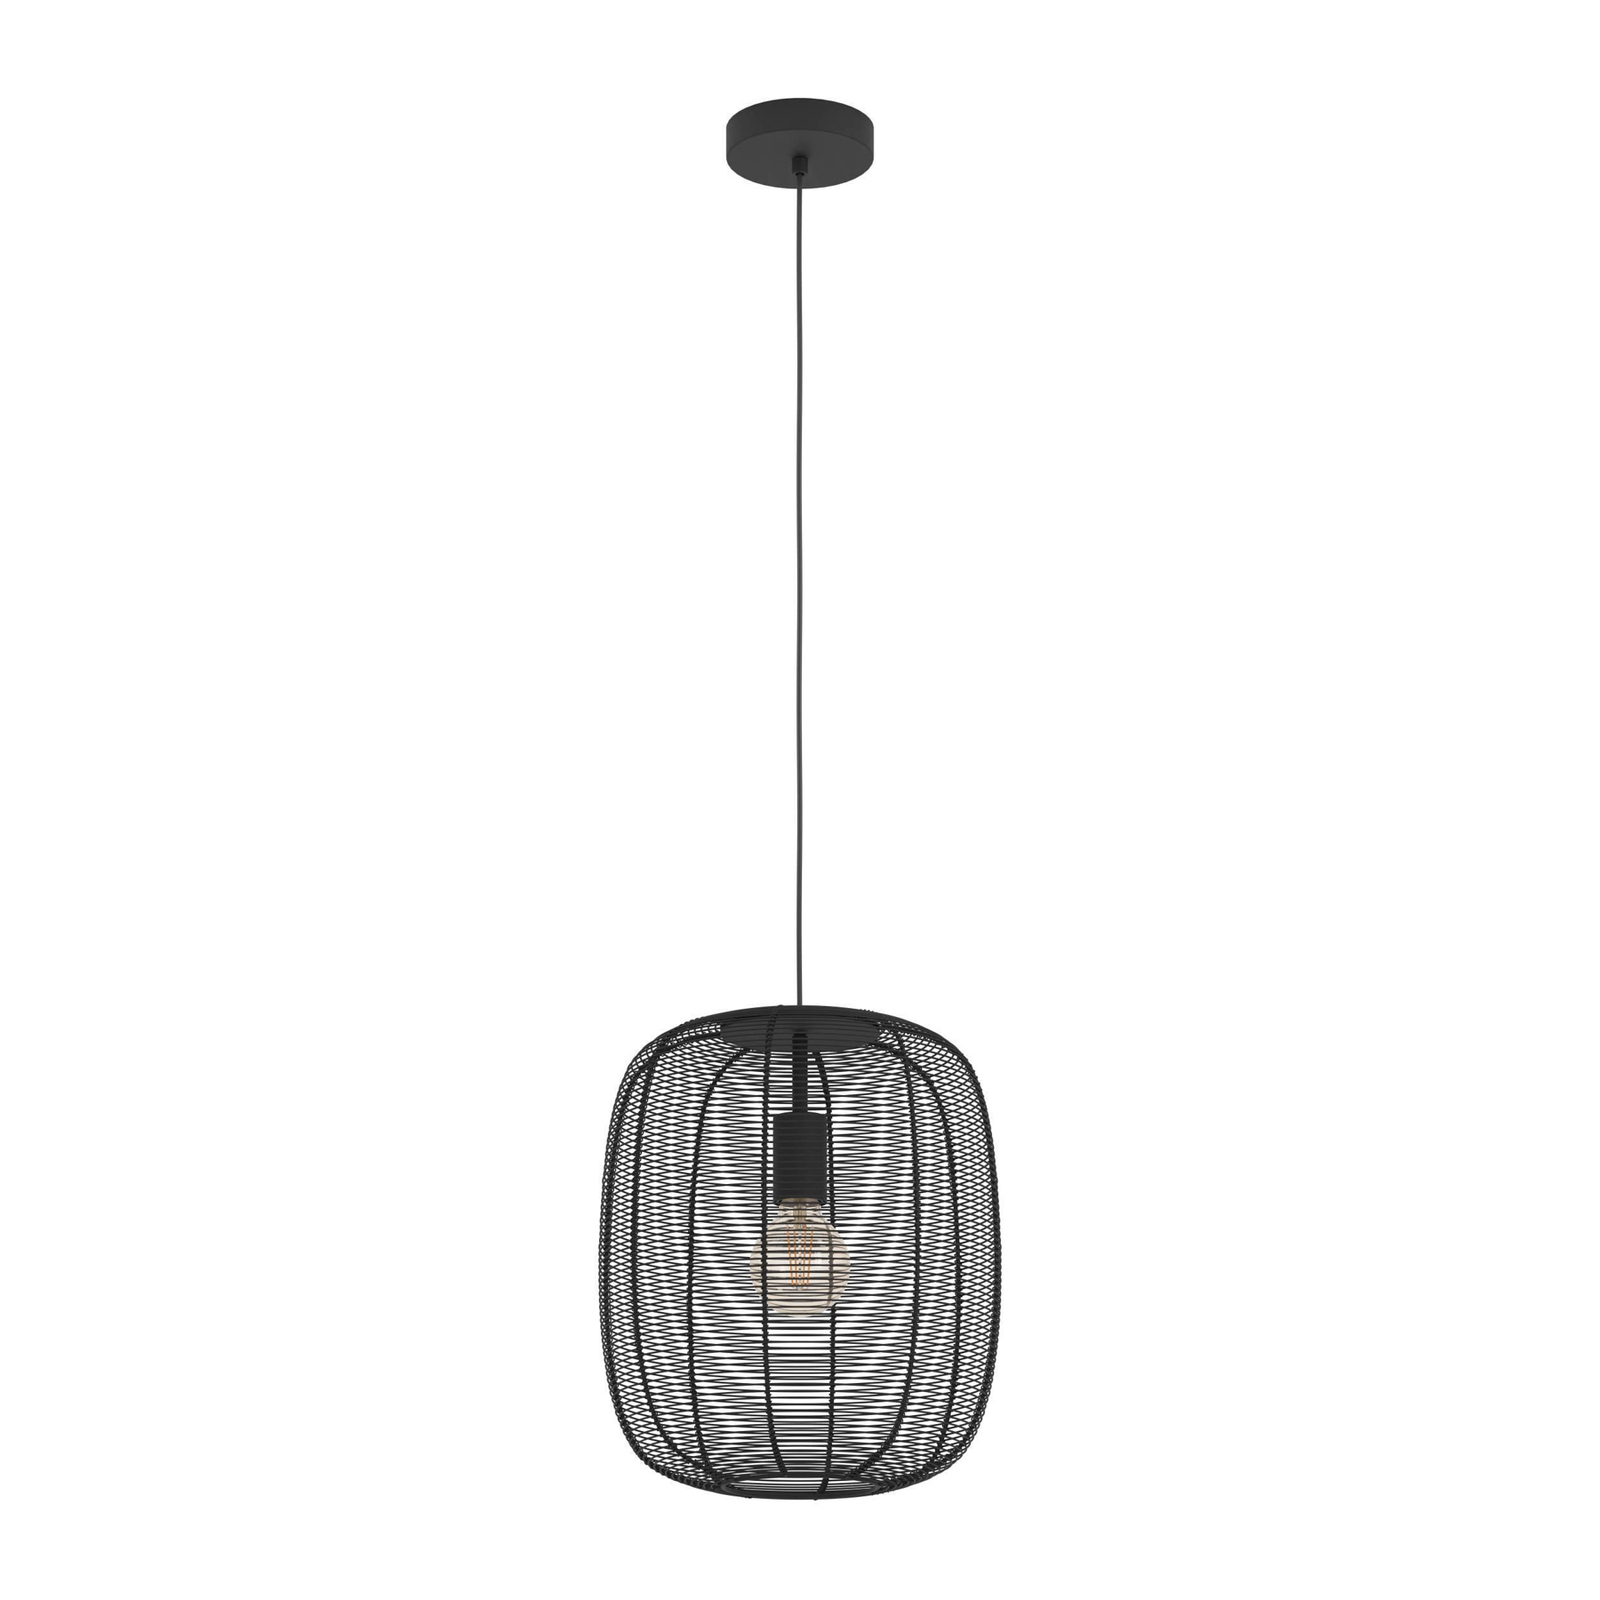 Rinroe viseća svjetiljka, Ø 32,5 cm, crna, čelik